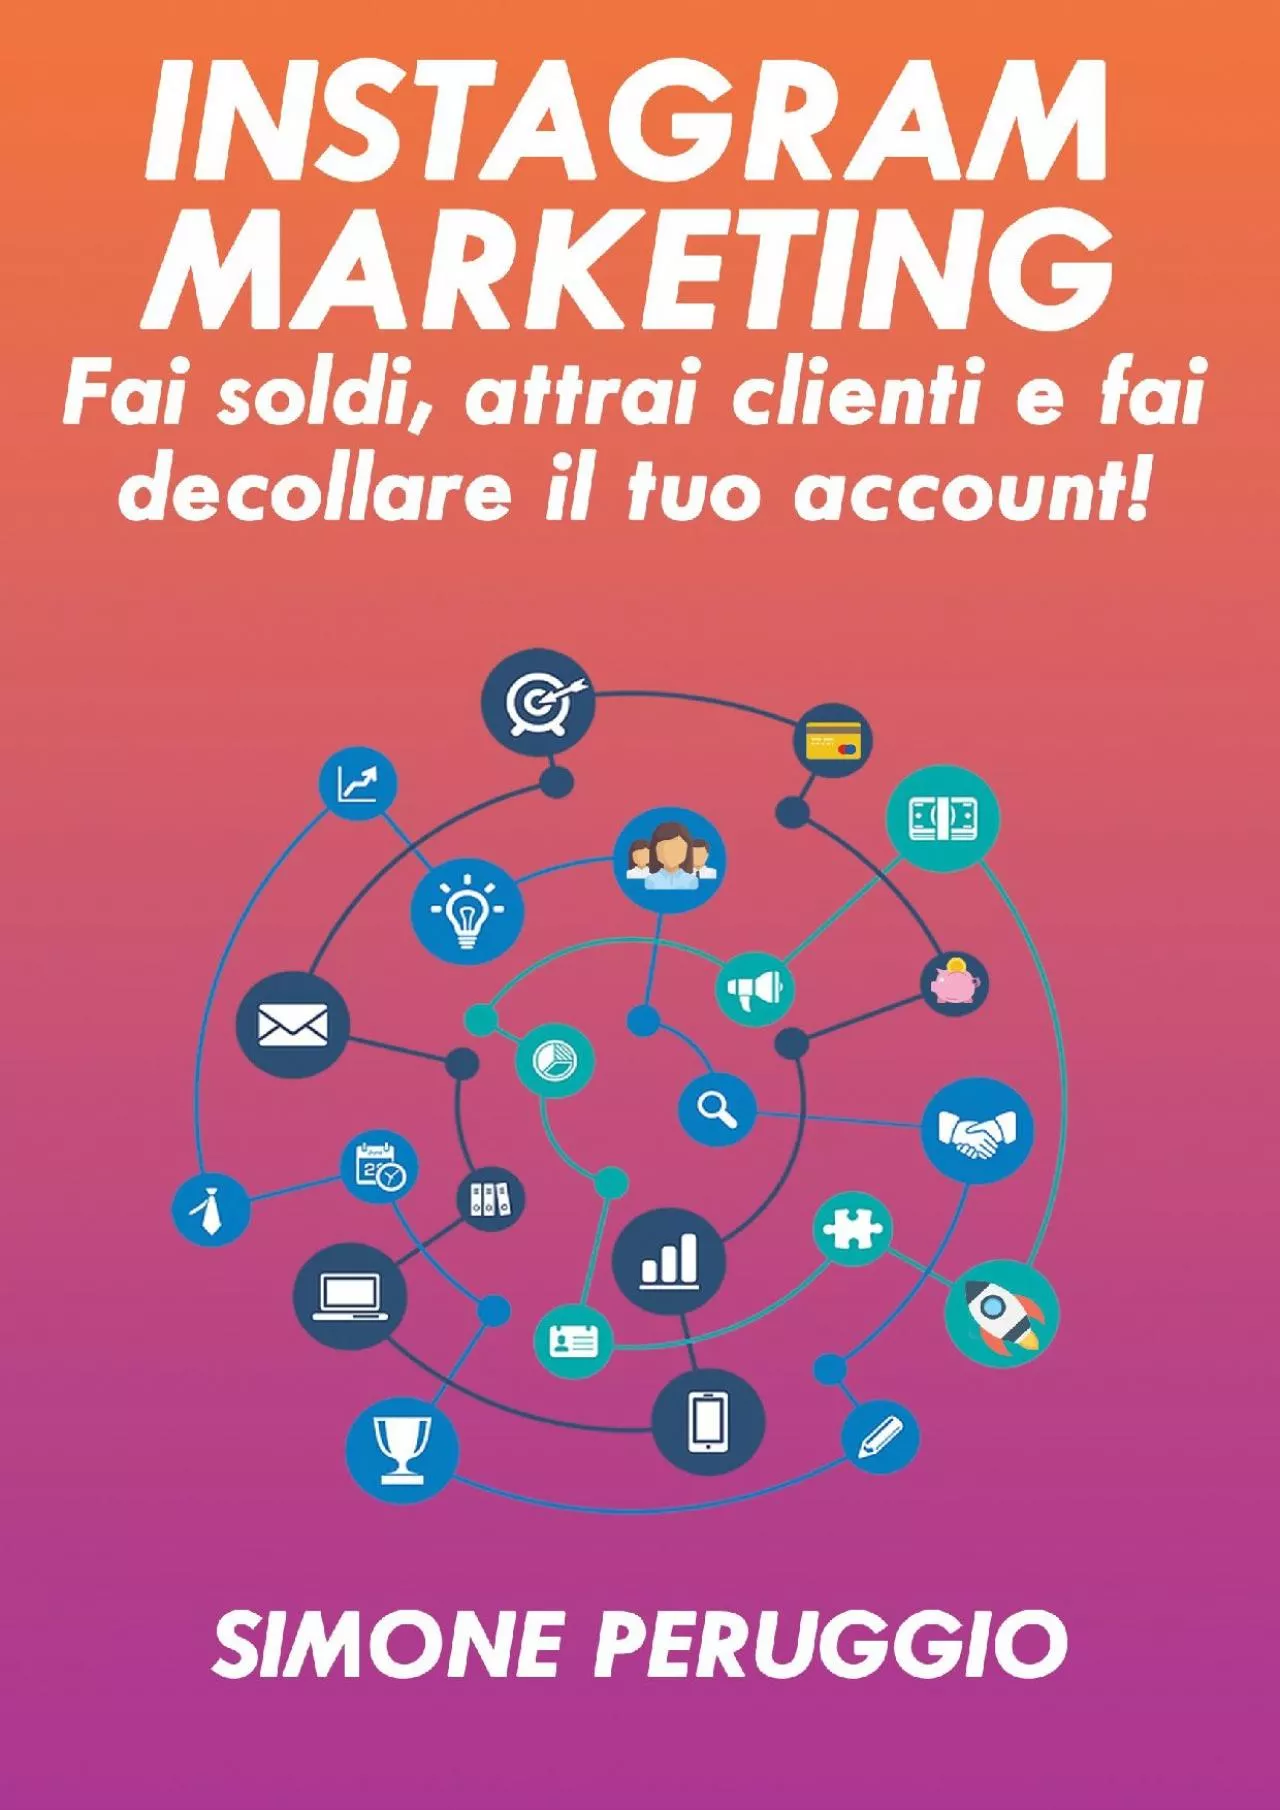 Instagram Marketing: fai soldi, attrai clienti e fai decollare il tuo account (Italian